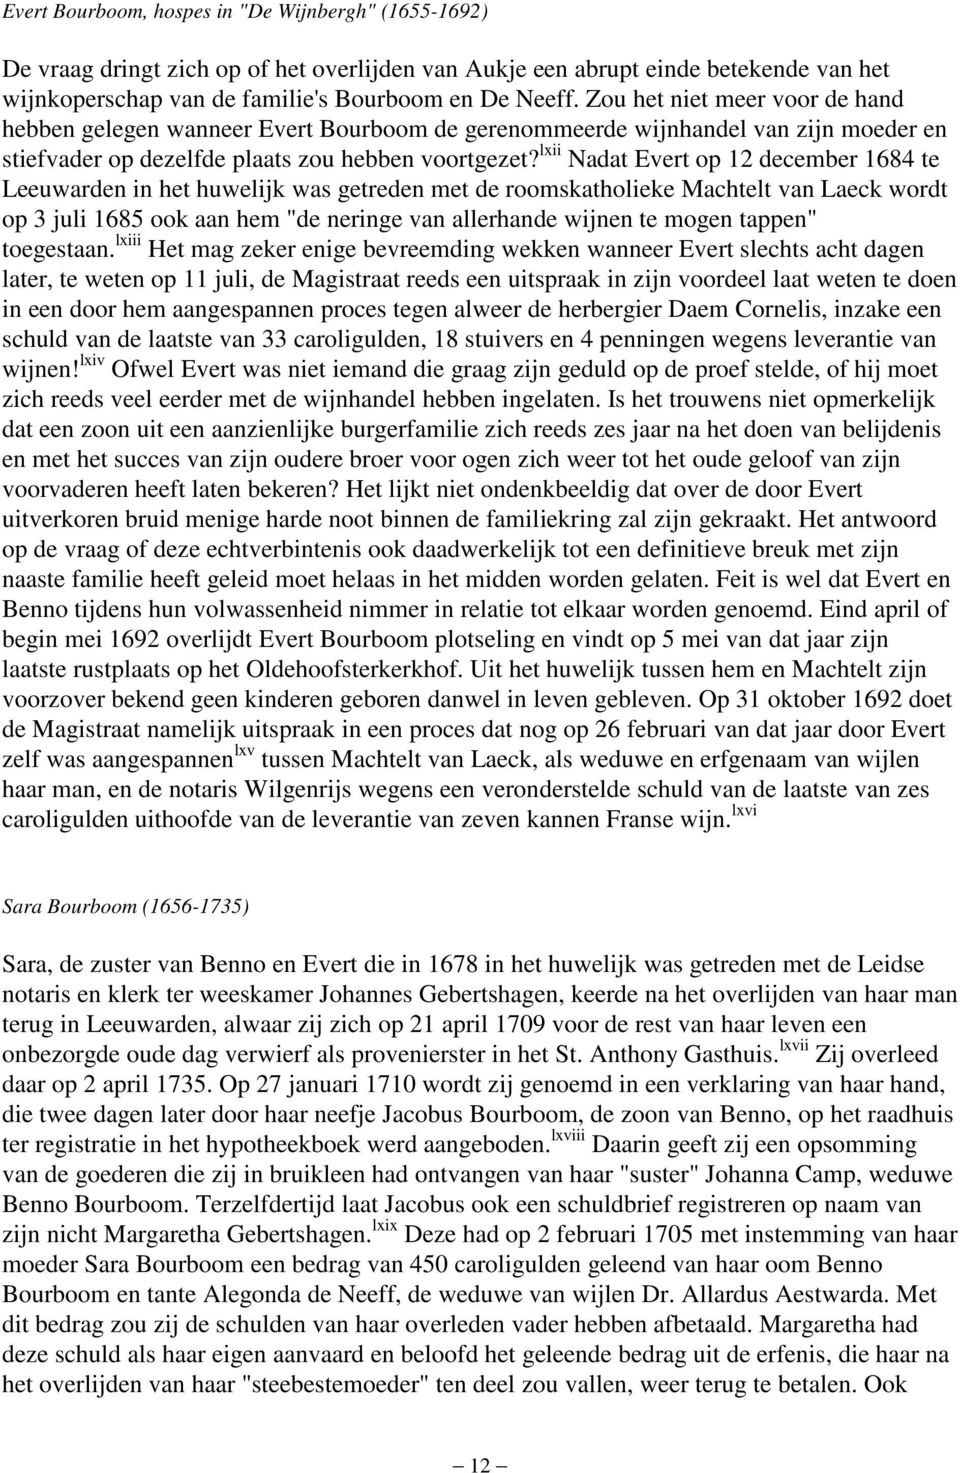 lxii Nadat Evert op 12 december 1684 te Leeuwarden in het huwelijk was getreden met de roomskatholieke Machtelt van Laeck wordt op 3 juli 1685 ook aan hem "de neringe van allerhande wijnen te mogen